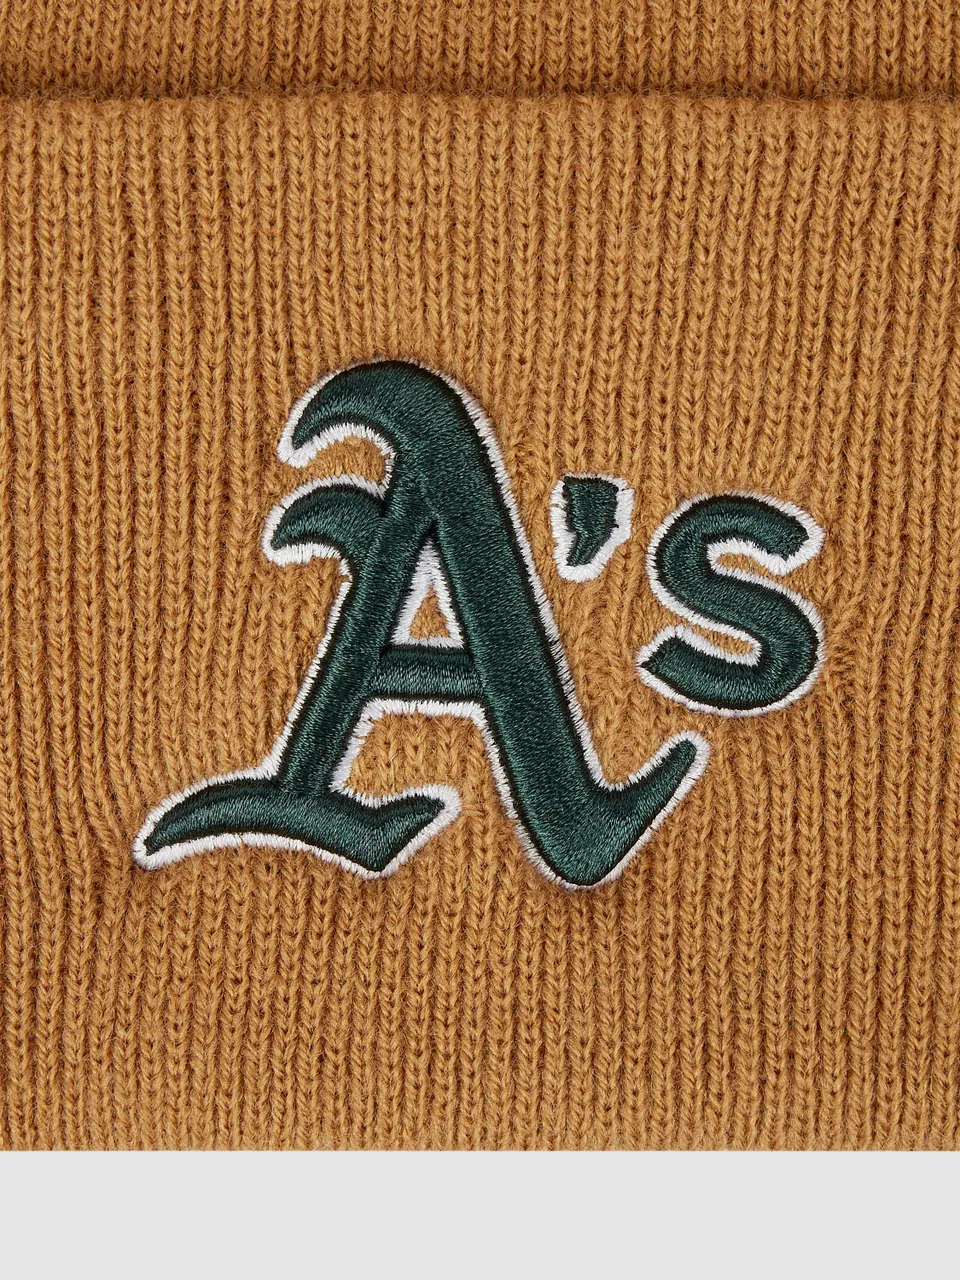 Mütze mit 'Oakland Athletics'-Stickerei